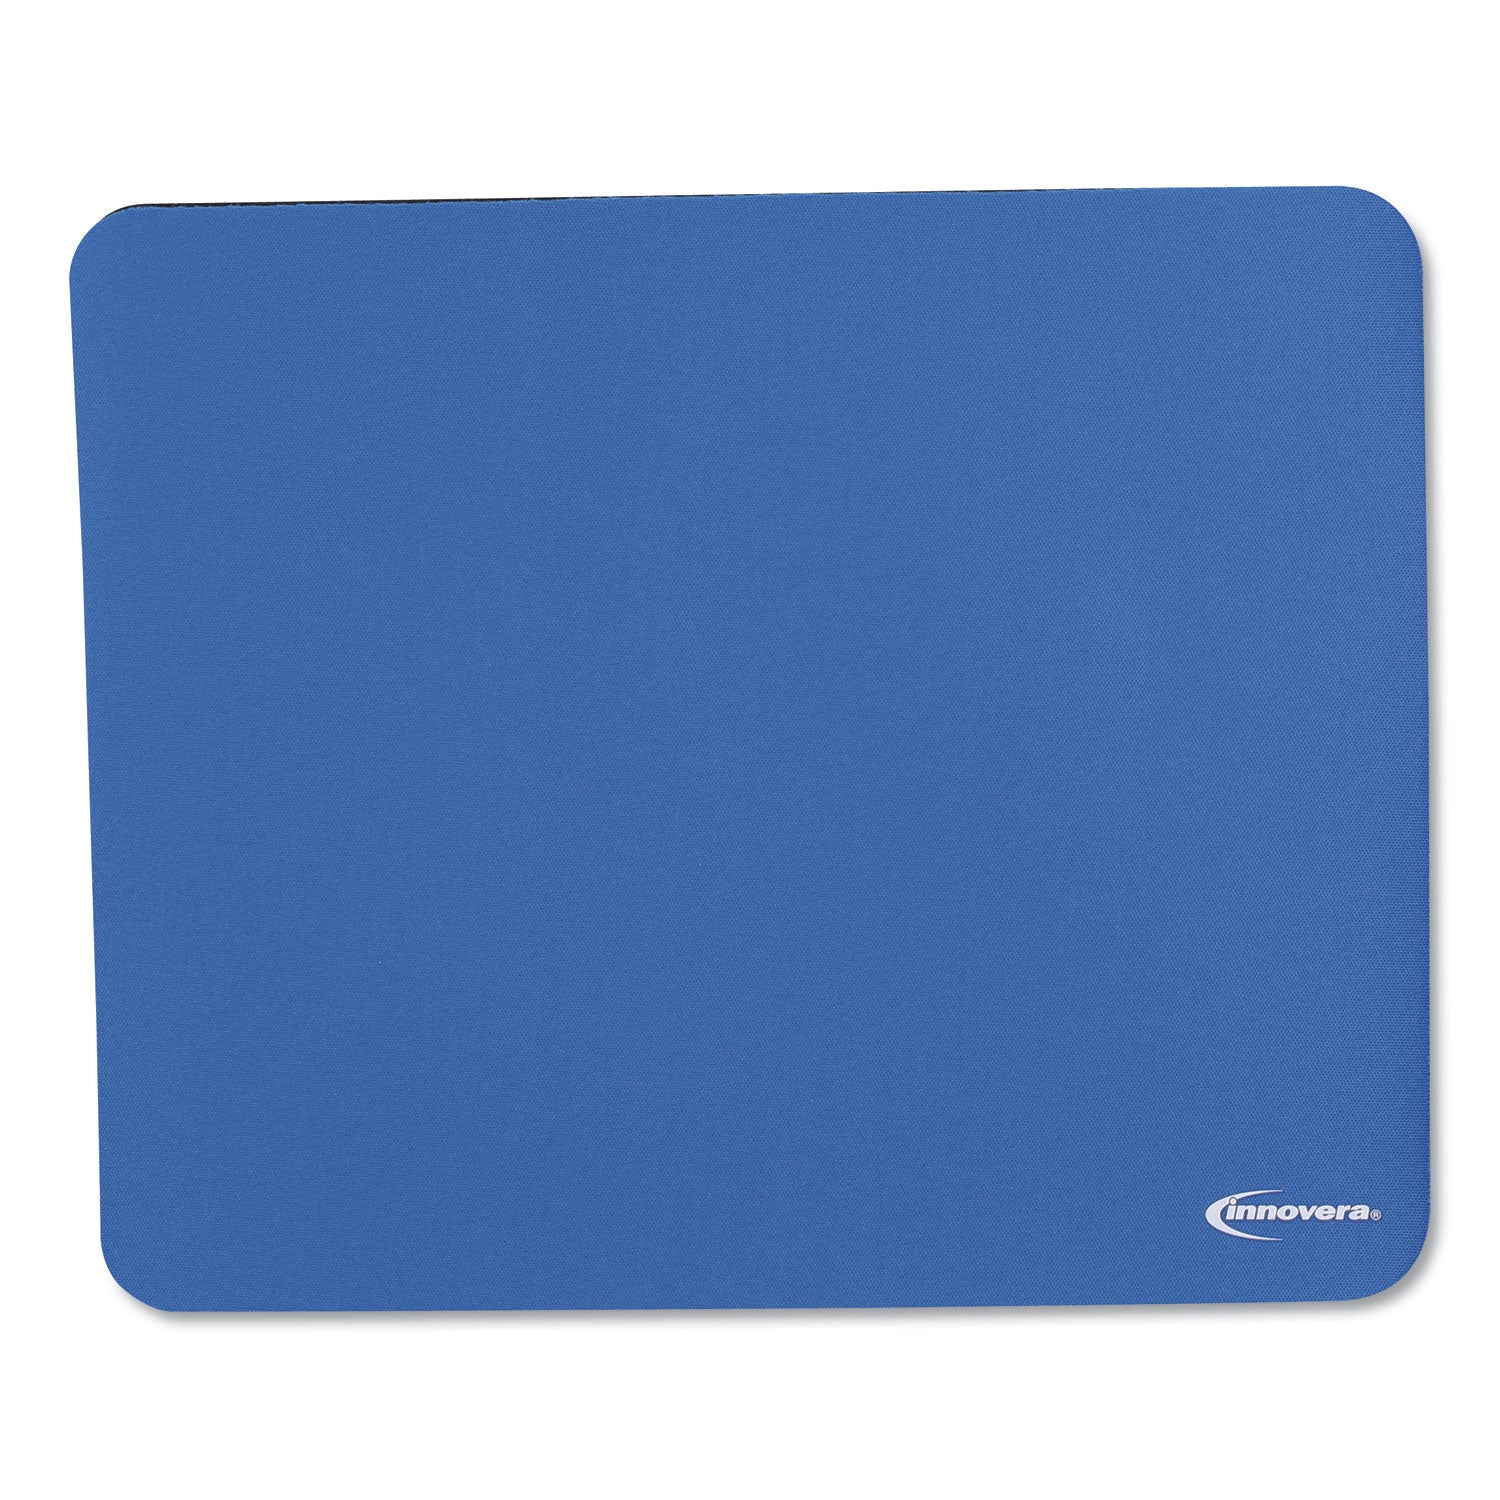 Mouse Pad, 9 x 7.5, Blue - 